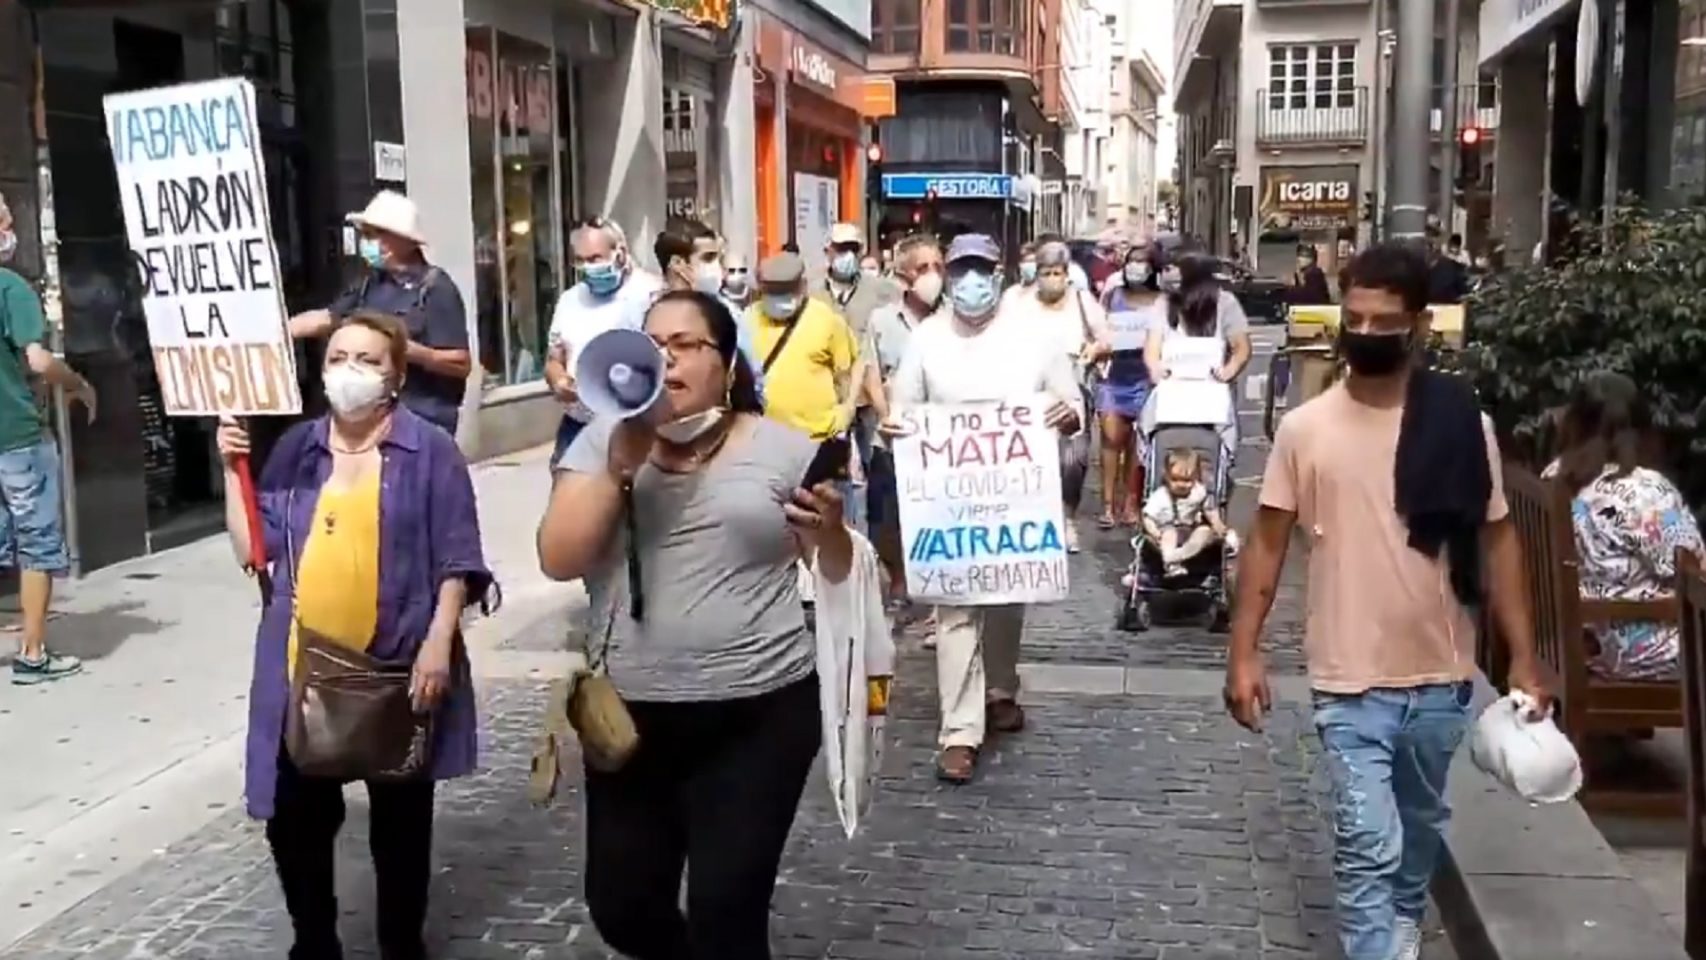 Un momento de la manifestación contra las comisiones de Abanca en A Coruña.